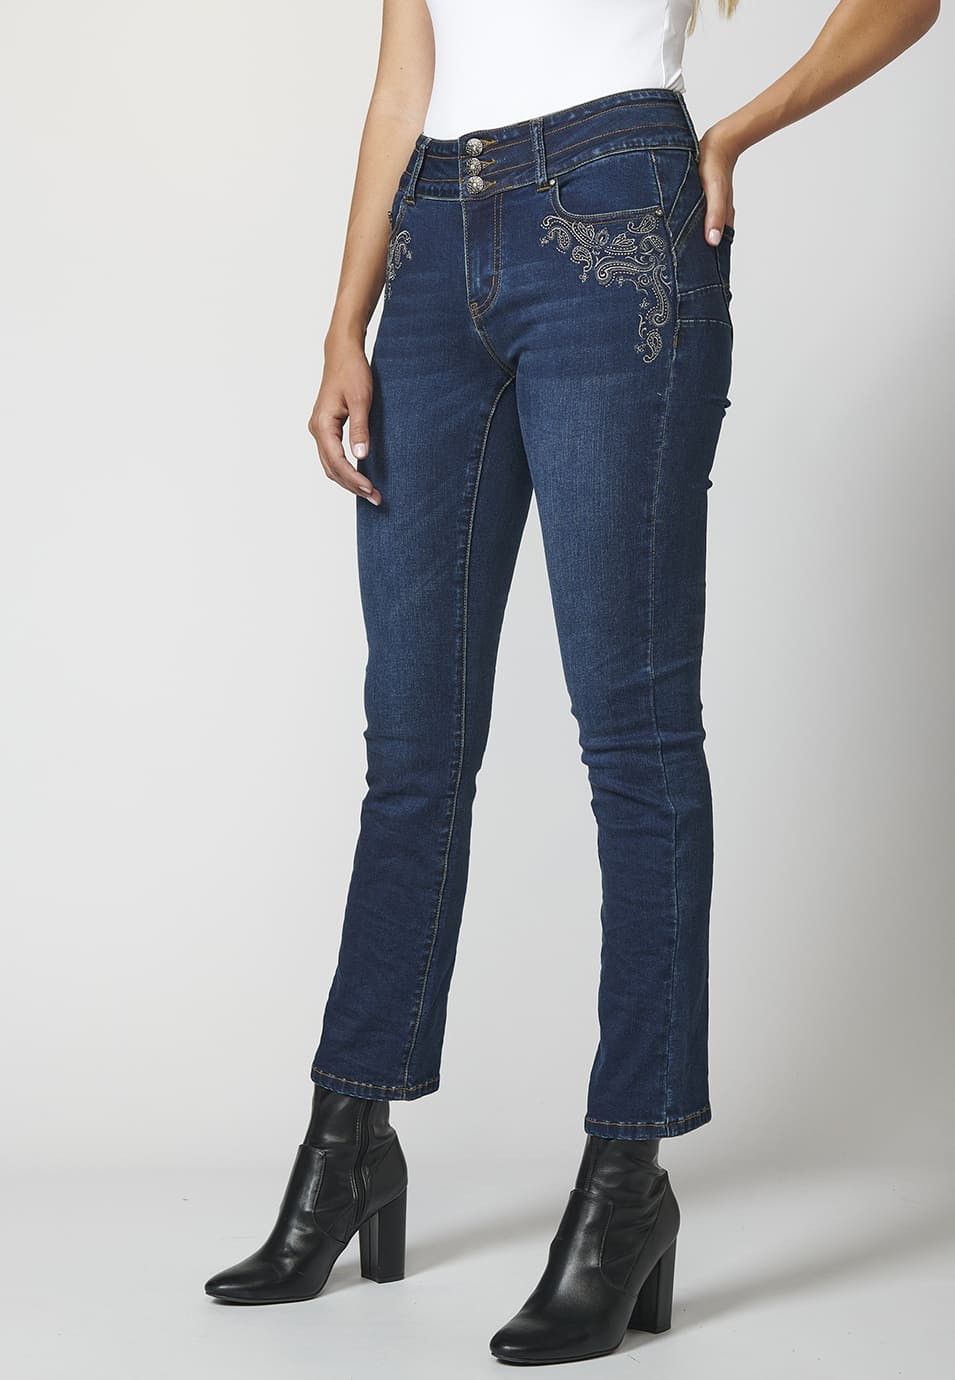 Jeans Denim elásticos efecto push up para Mujer